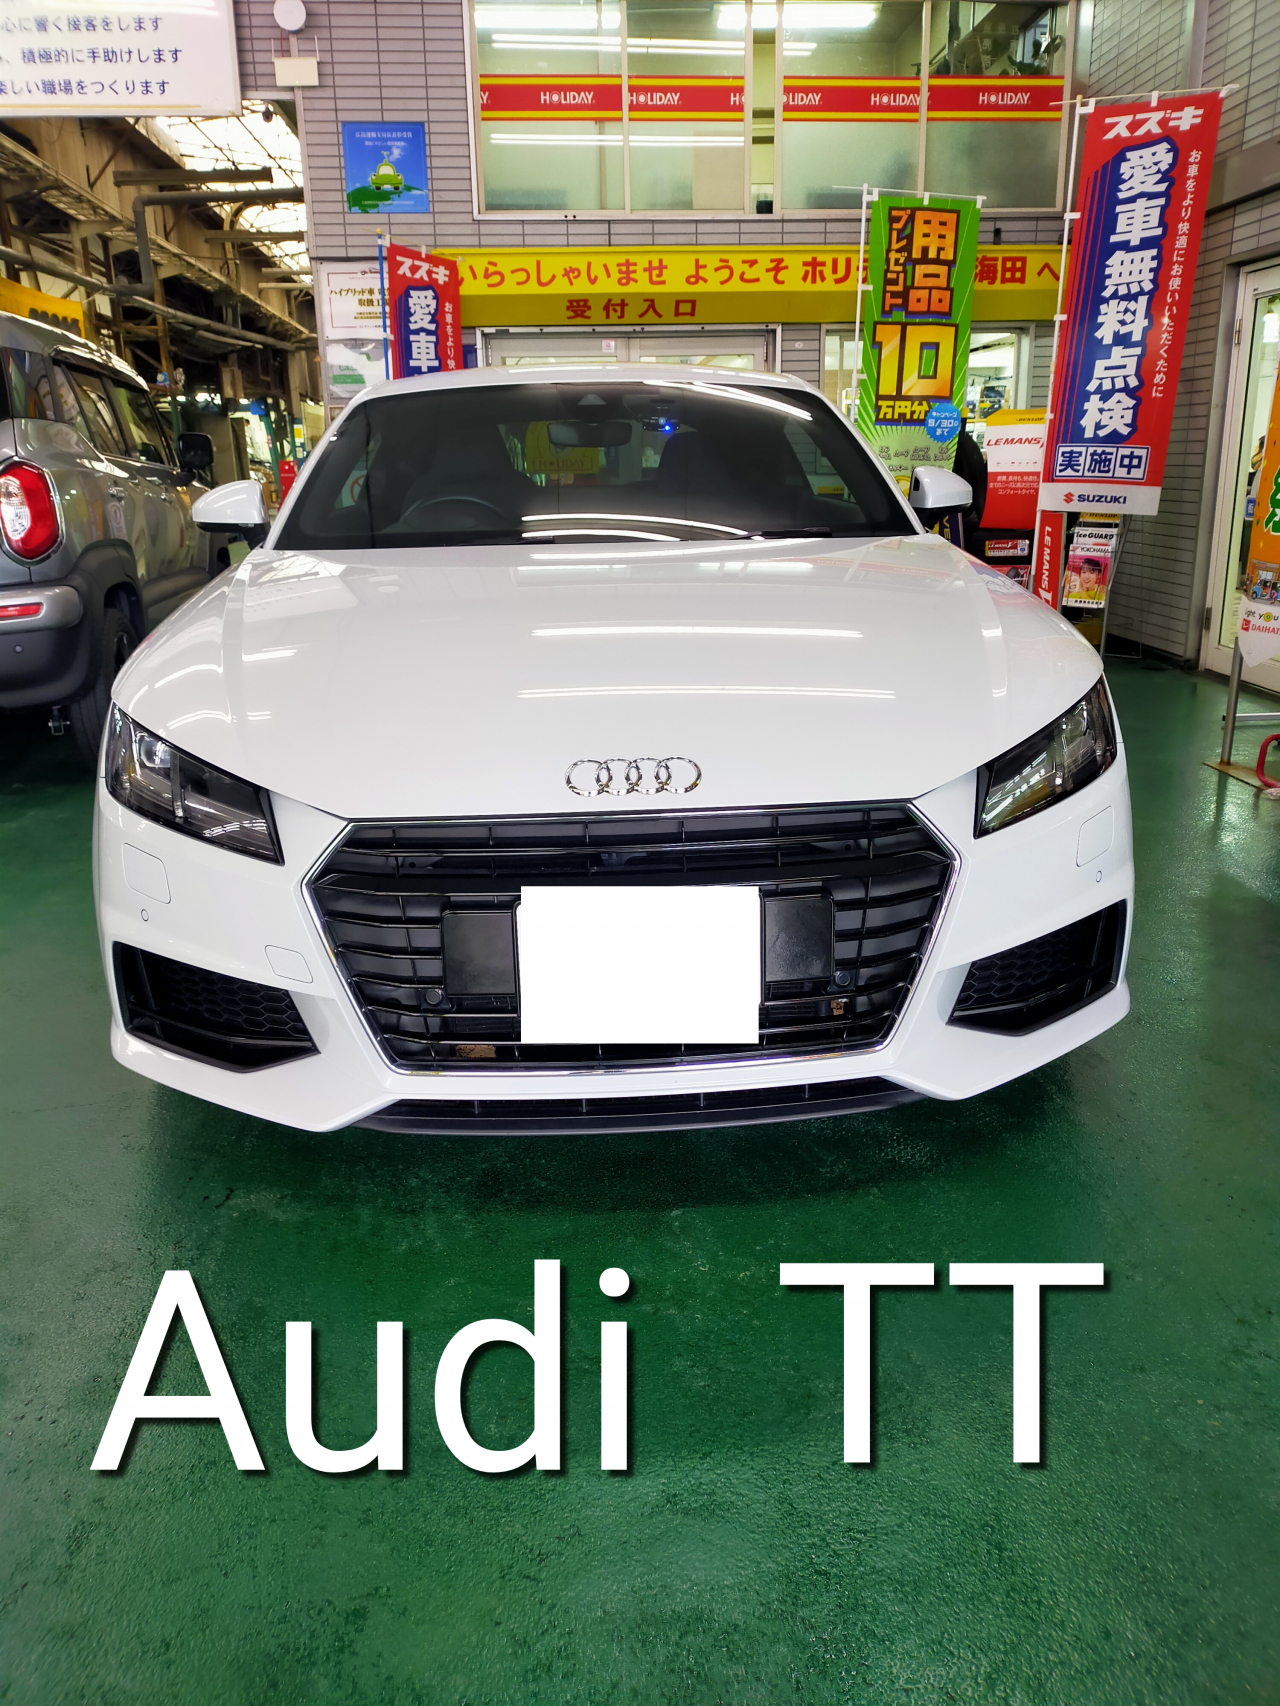 中古車 Audi Tt タオダ自動車工業スタッフブログ 株式会社タオダ自動車工業